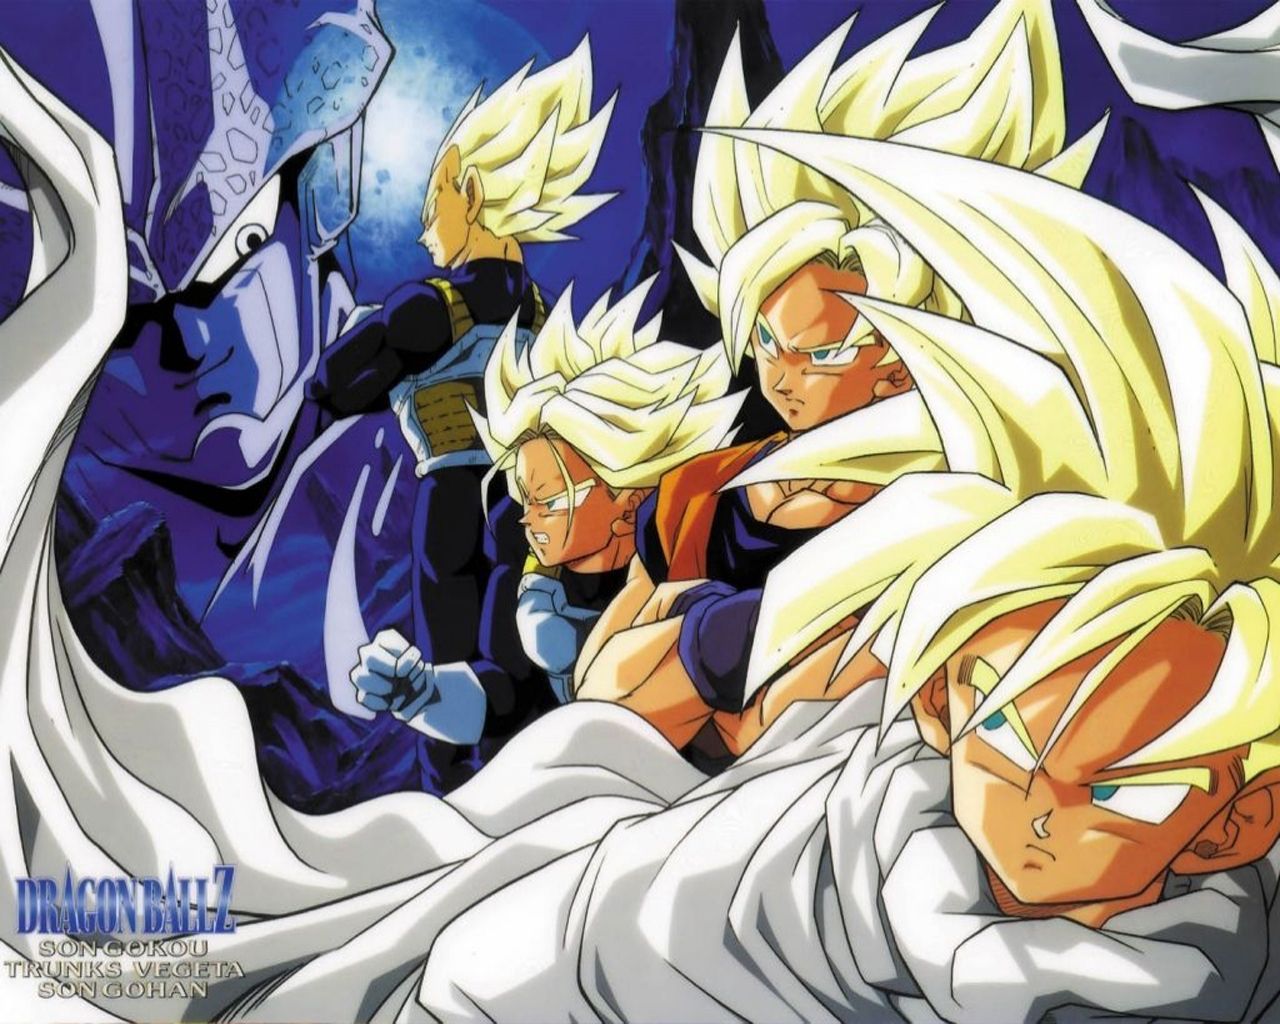 Dragon Ball Z Wallpaper Goku And Vegeta